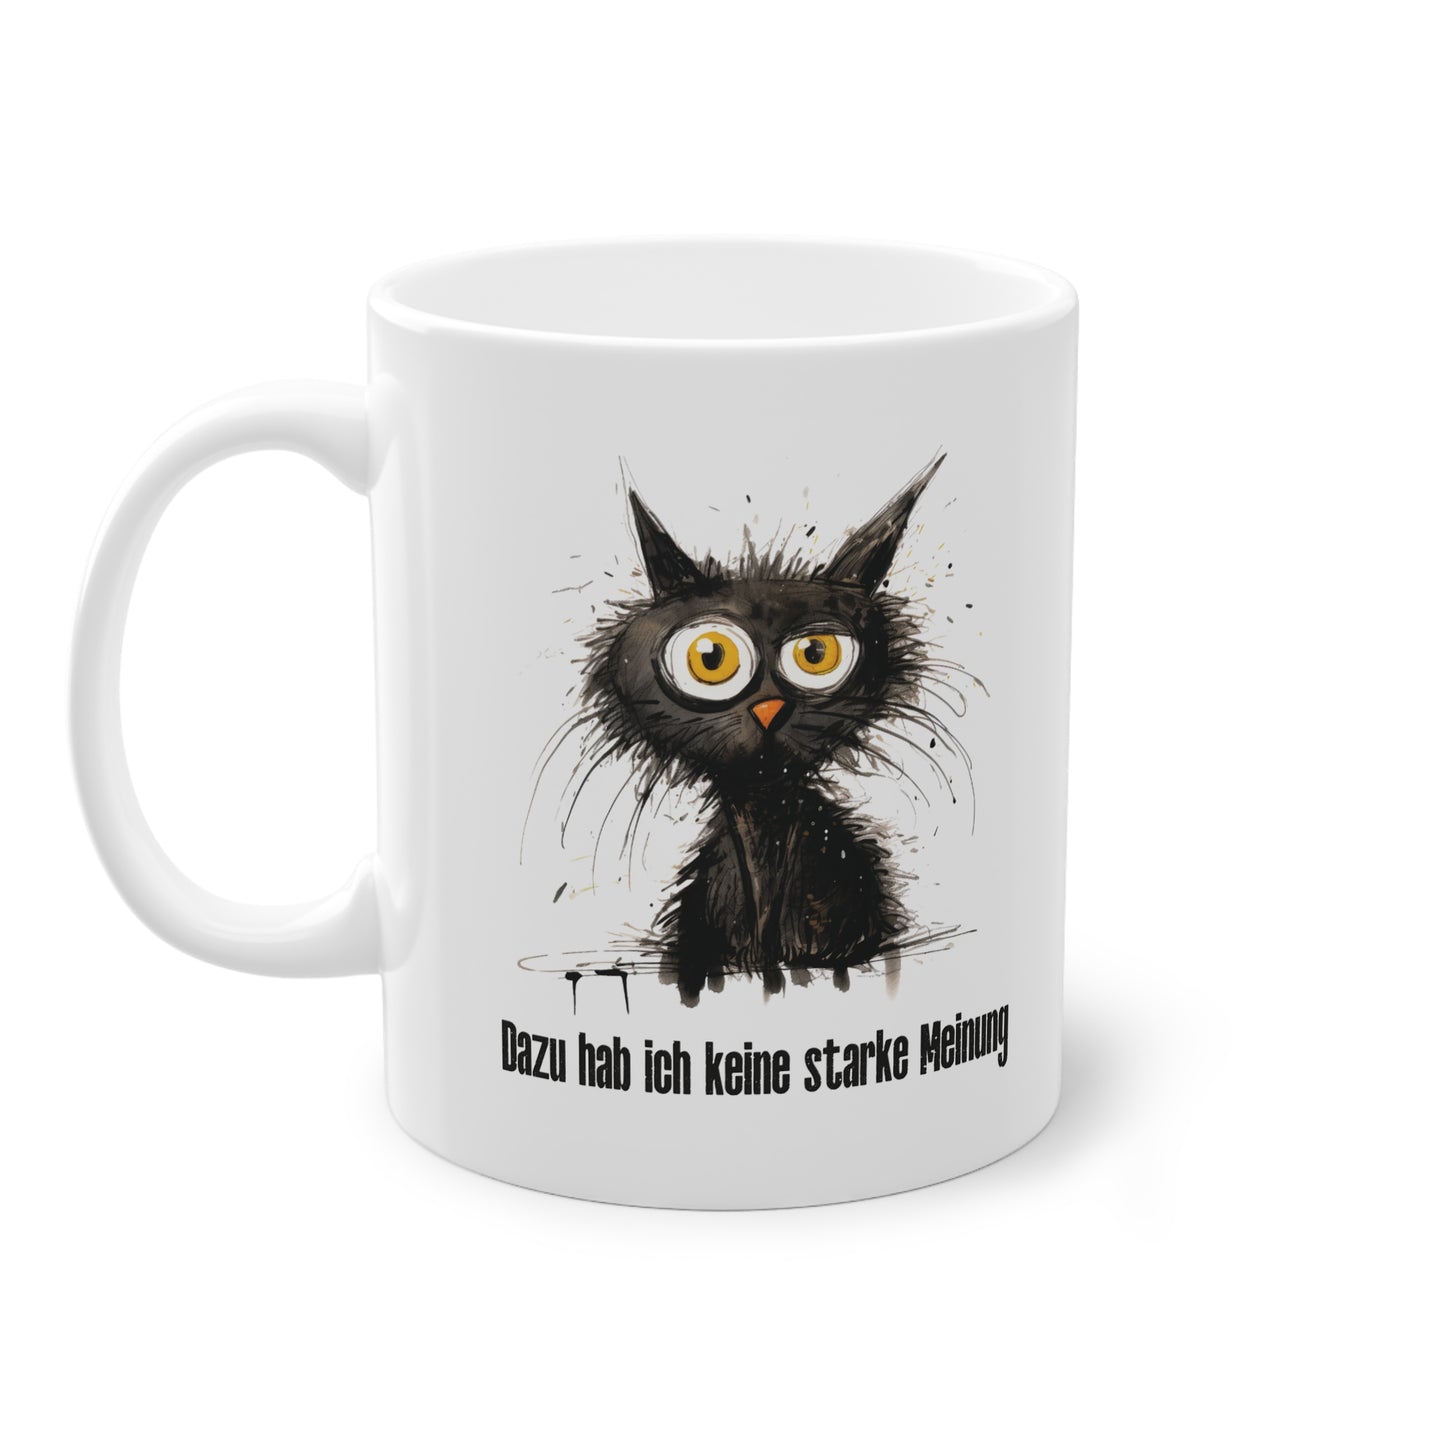 Entdecken Sie die perfekte Sprüche Tasse - Sarkastische Bürotasse mit schwarzer Katze. Ideal auch als Wichtelgeschenk für Kollegen oder als Anspielung